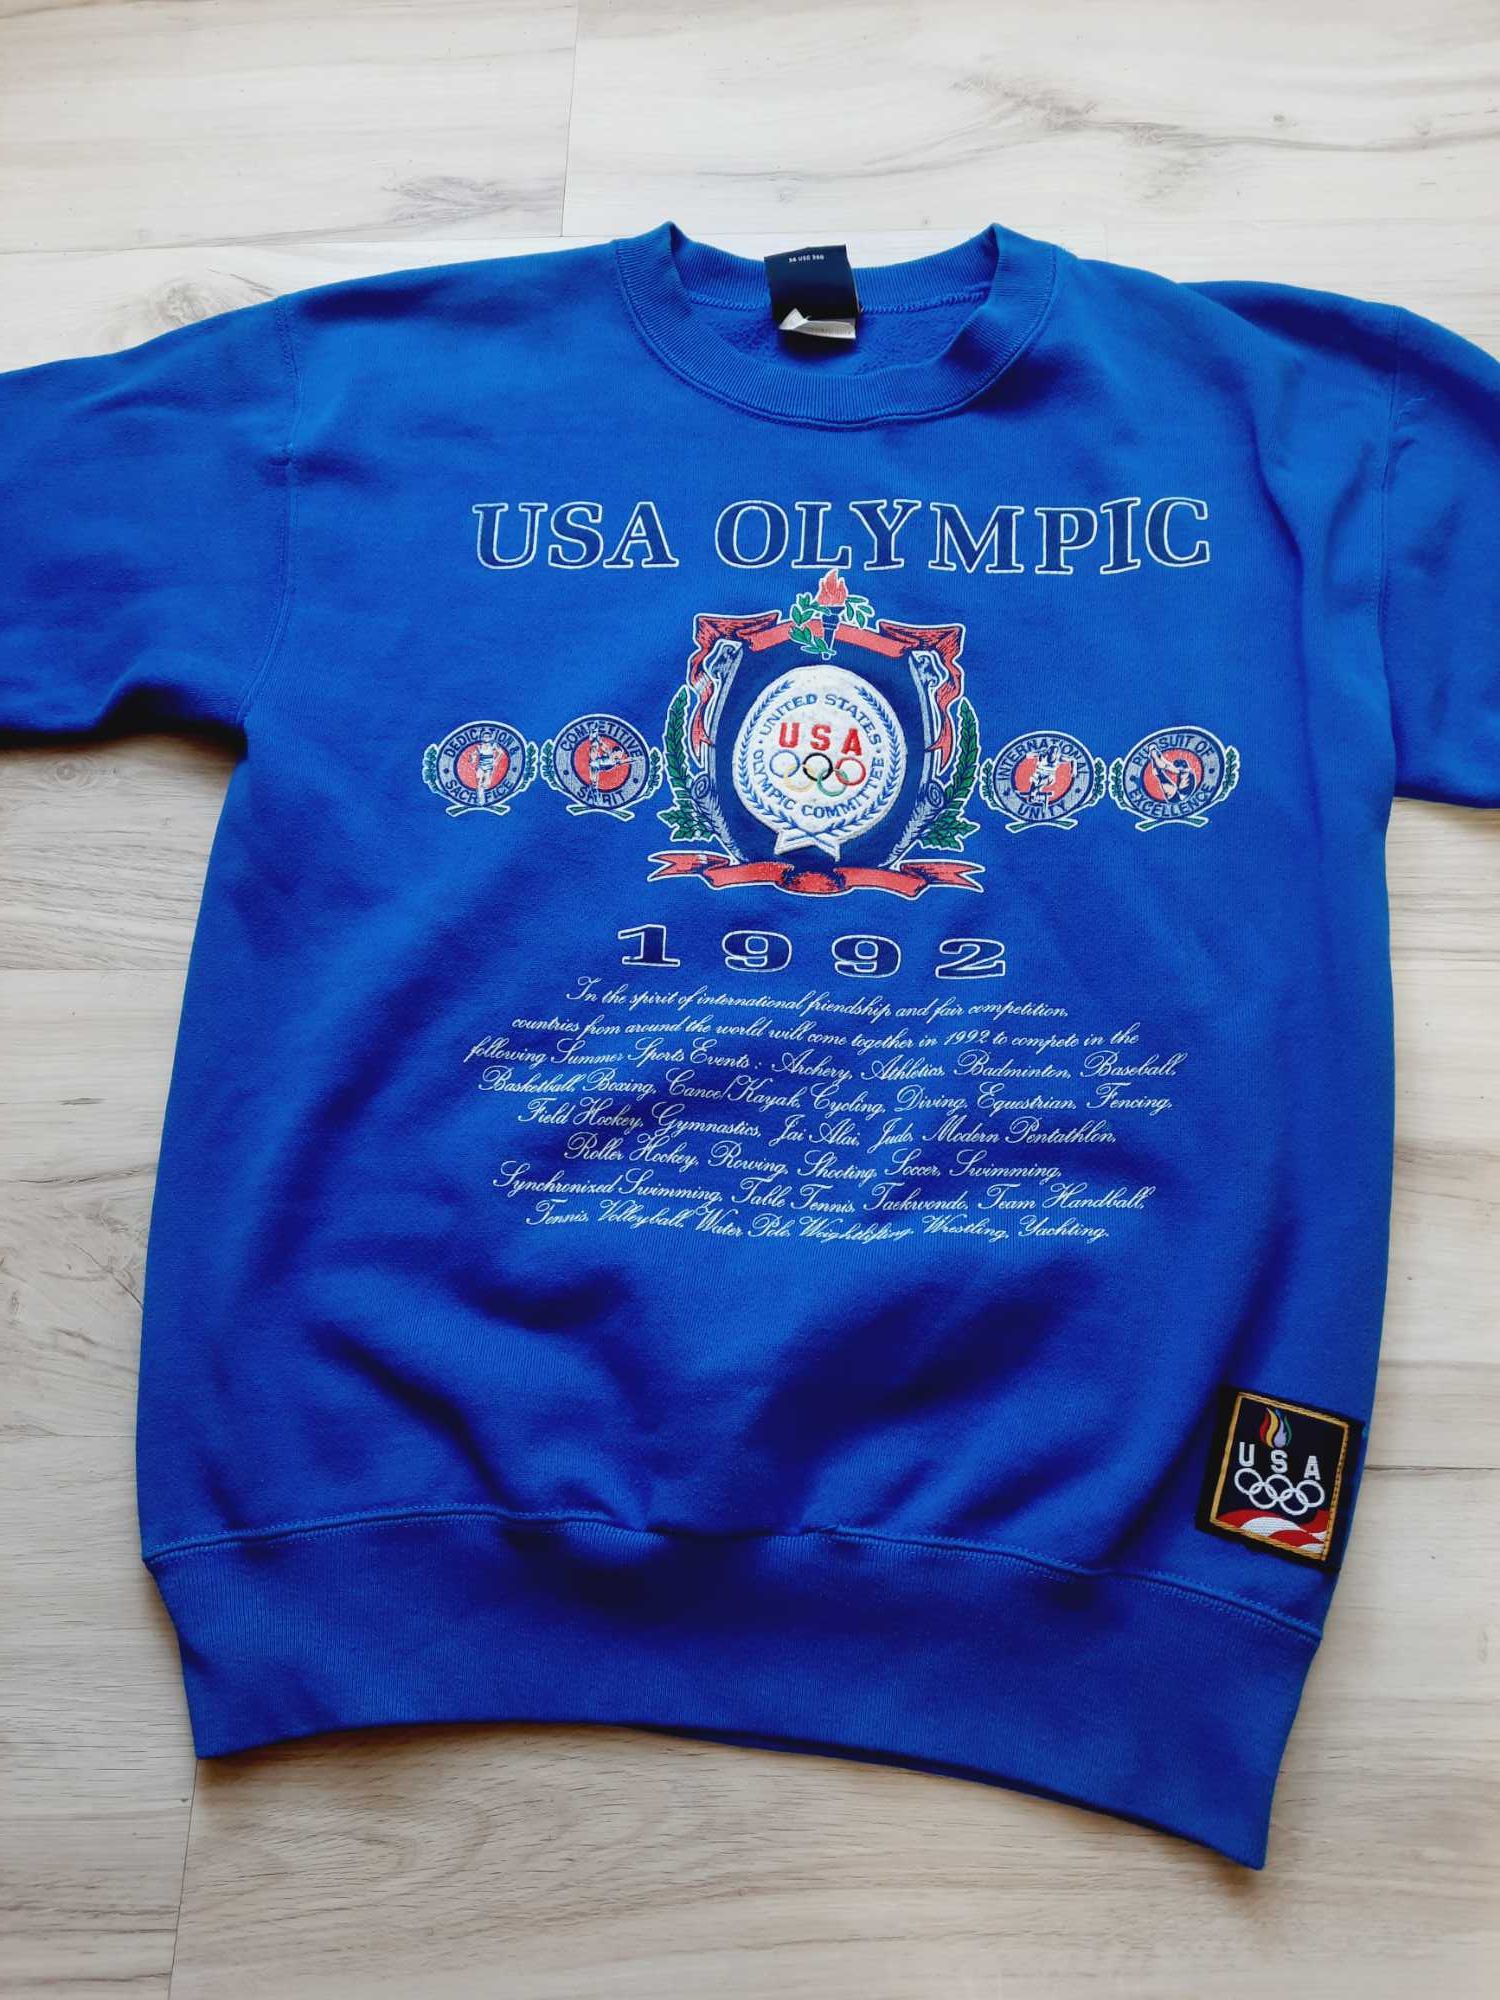 Bluzka Olympic Usa 1992 dla kolekcjonera